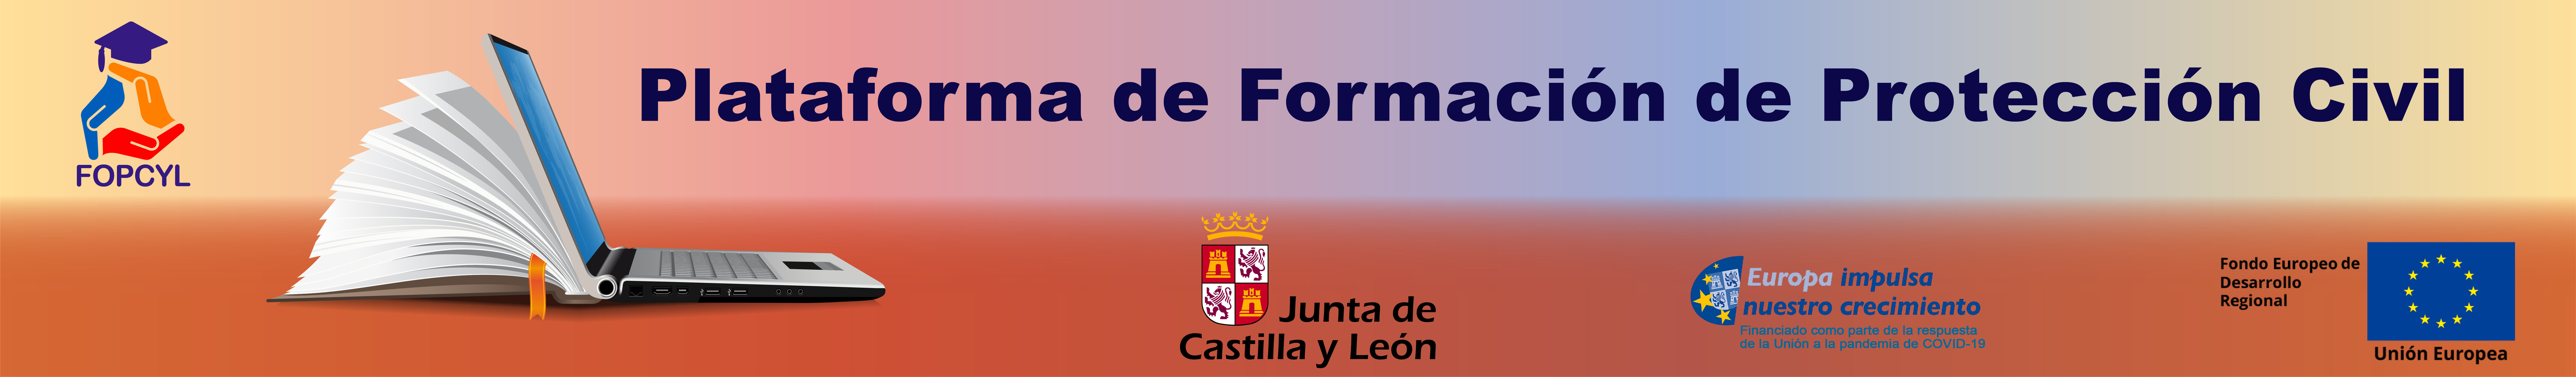 www.formacionproteccioncyl.es